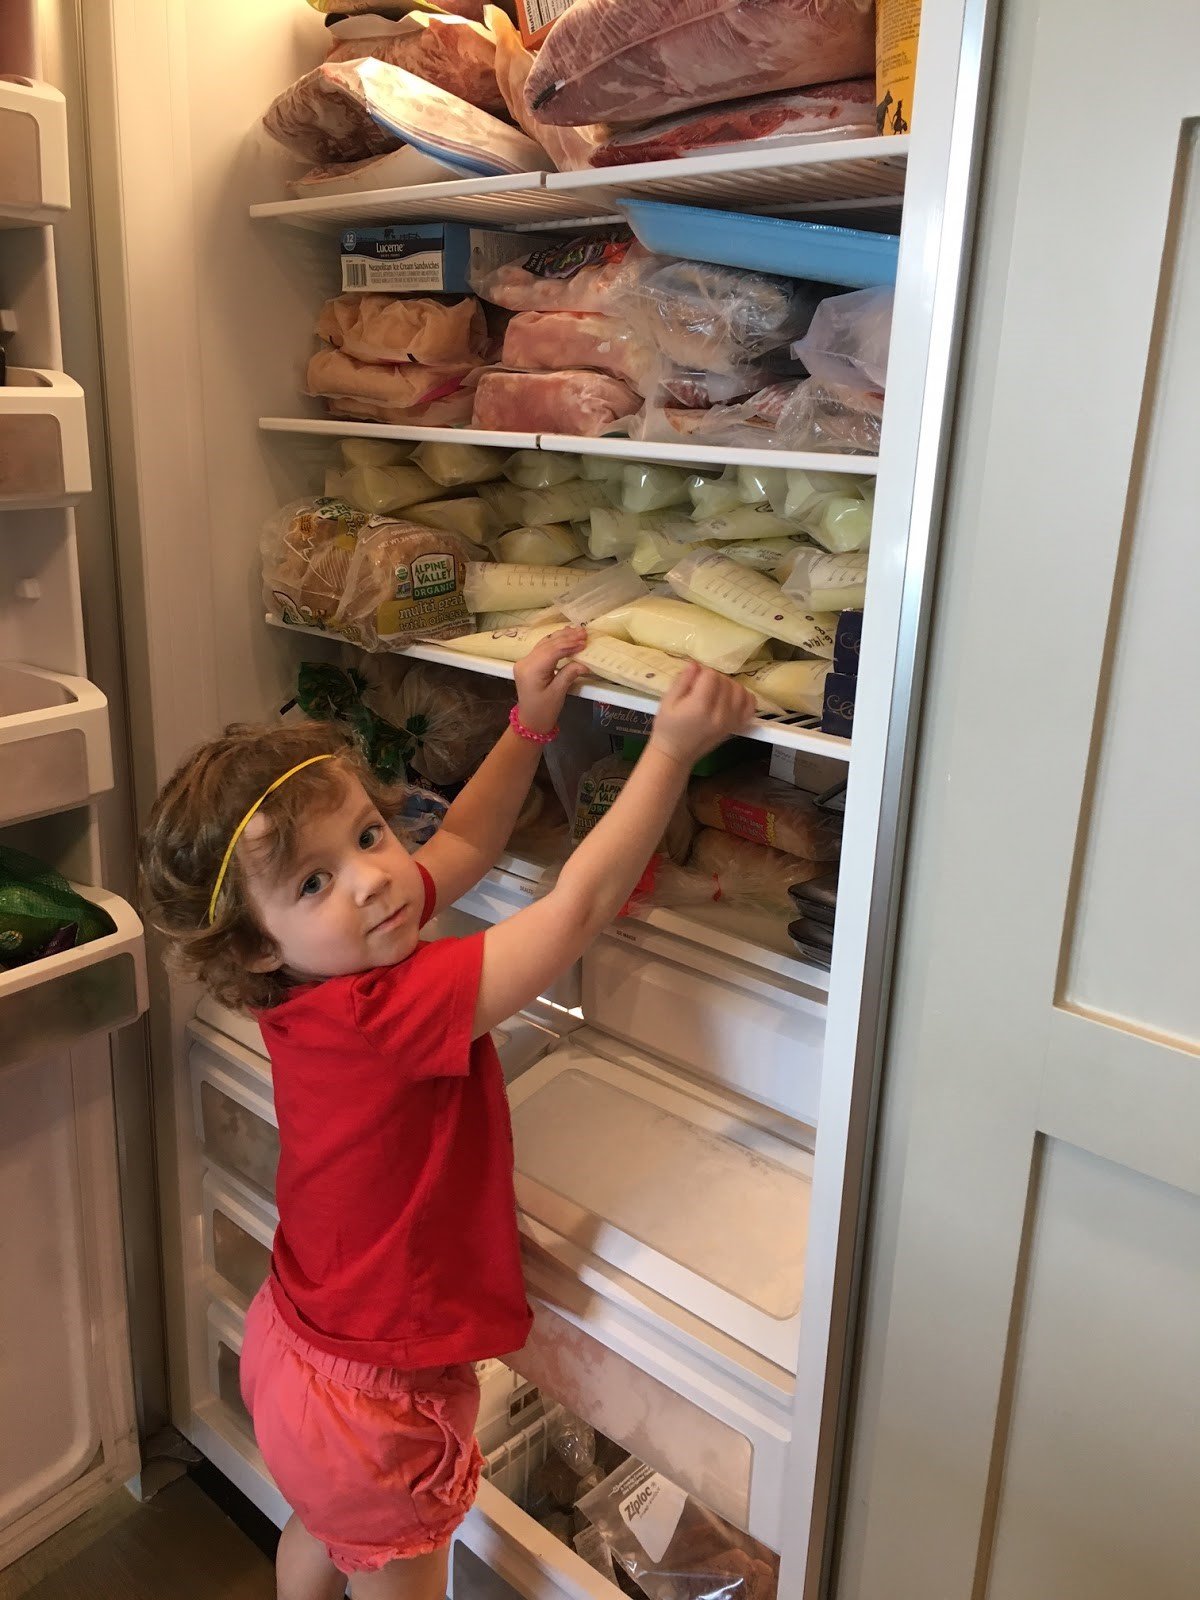 Toddler reaching into freezer